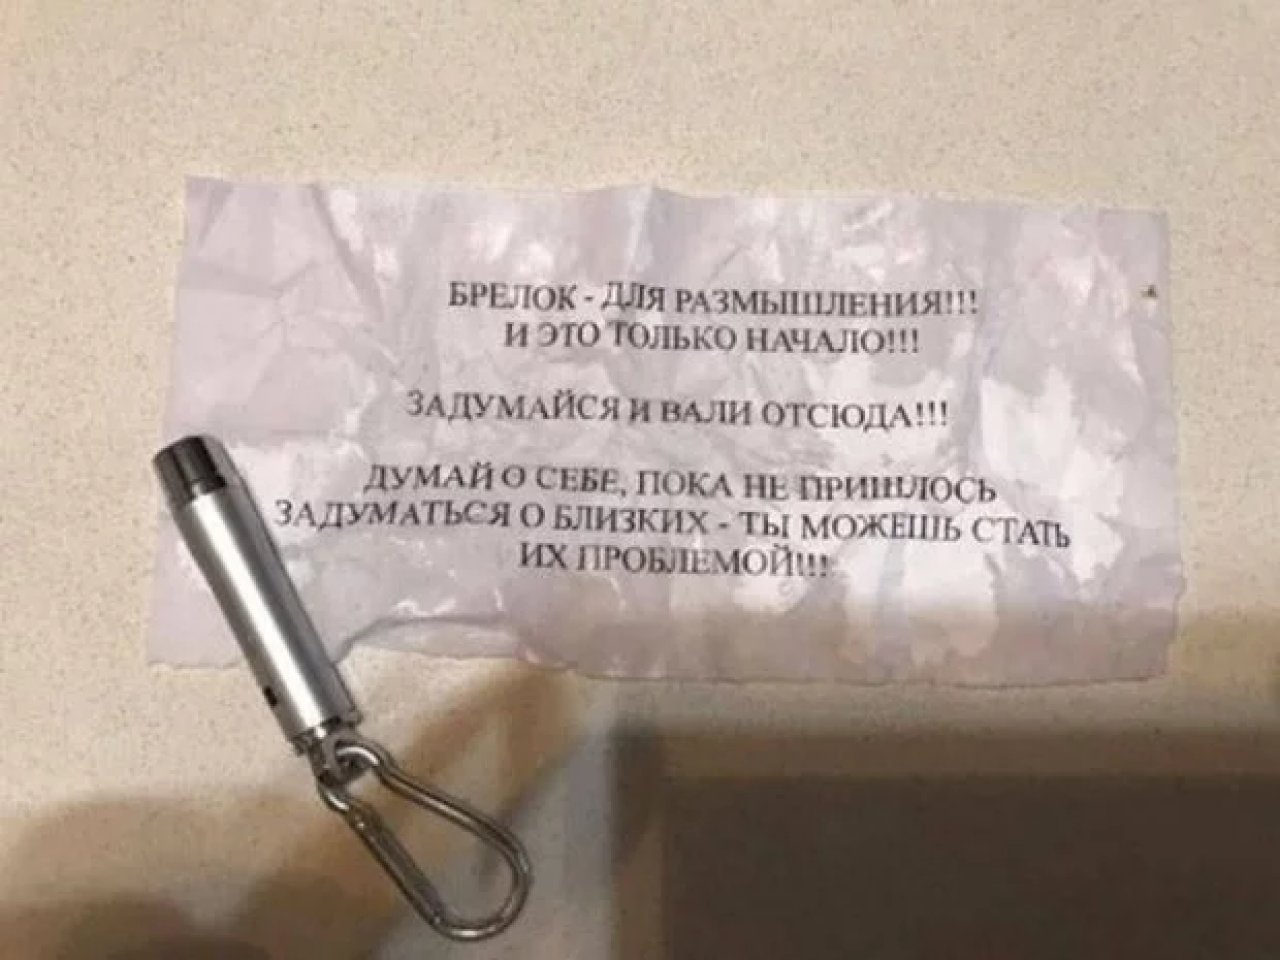 В сеть попал текст письма с угрозами депутату Соболеву